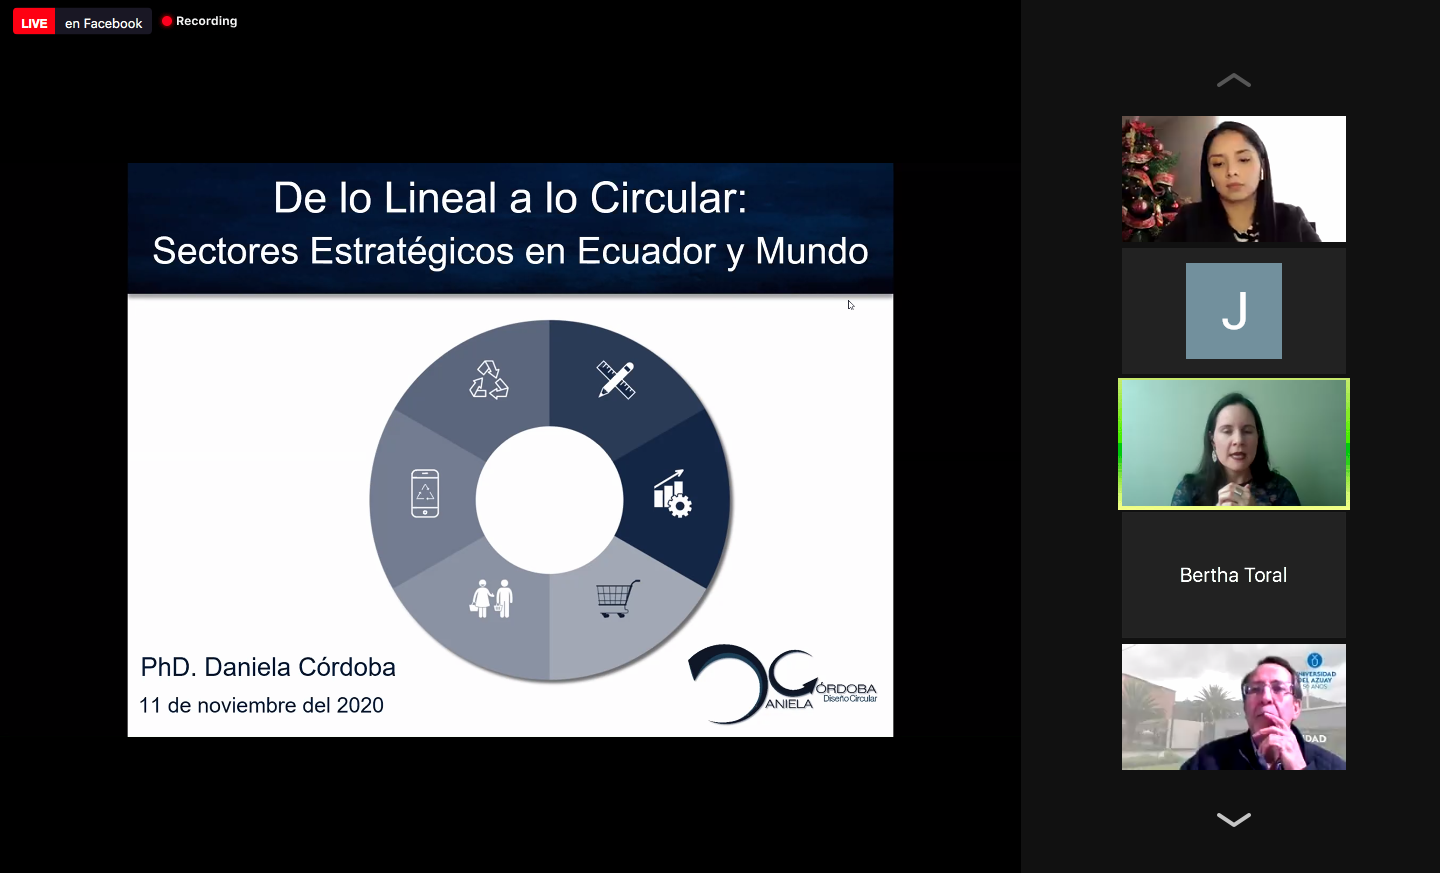 The circular economy in Ecuador